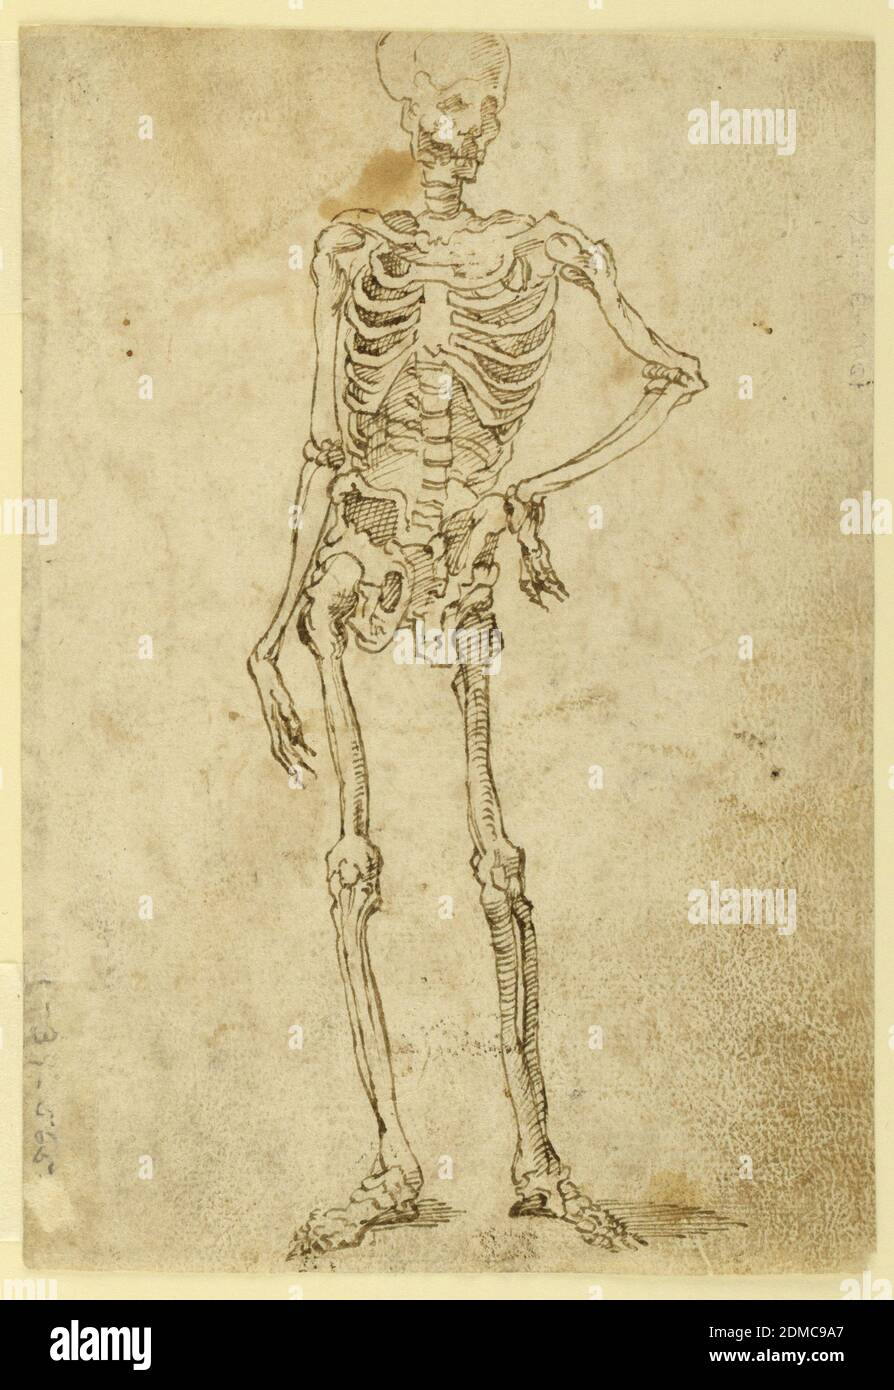 Skelett, Stift und braune Tinte auf Papier, ideales menschliches Skelett dargestellt stehend kontraposto, mit der linken Hand auf Hüfte., Italien, ca. 1550, Figuren, Zeichnung Stockfoto